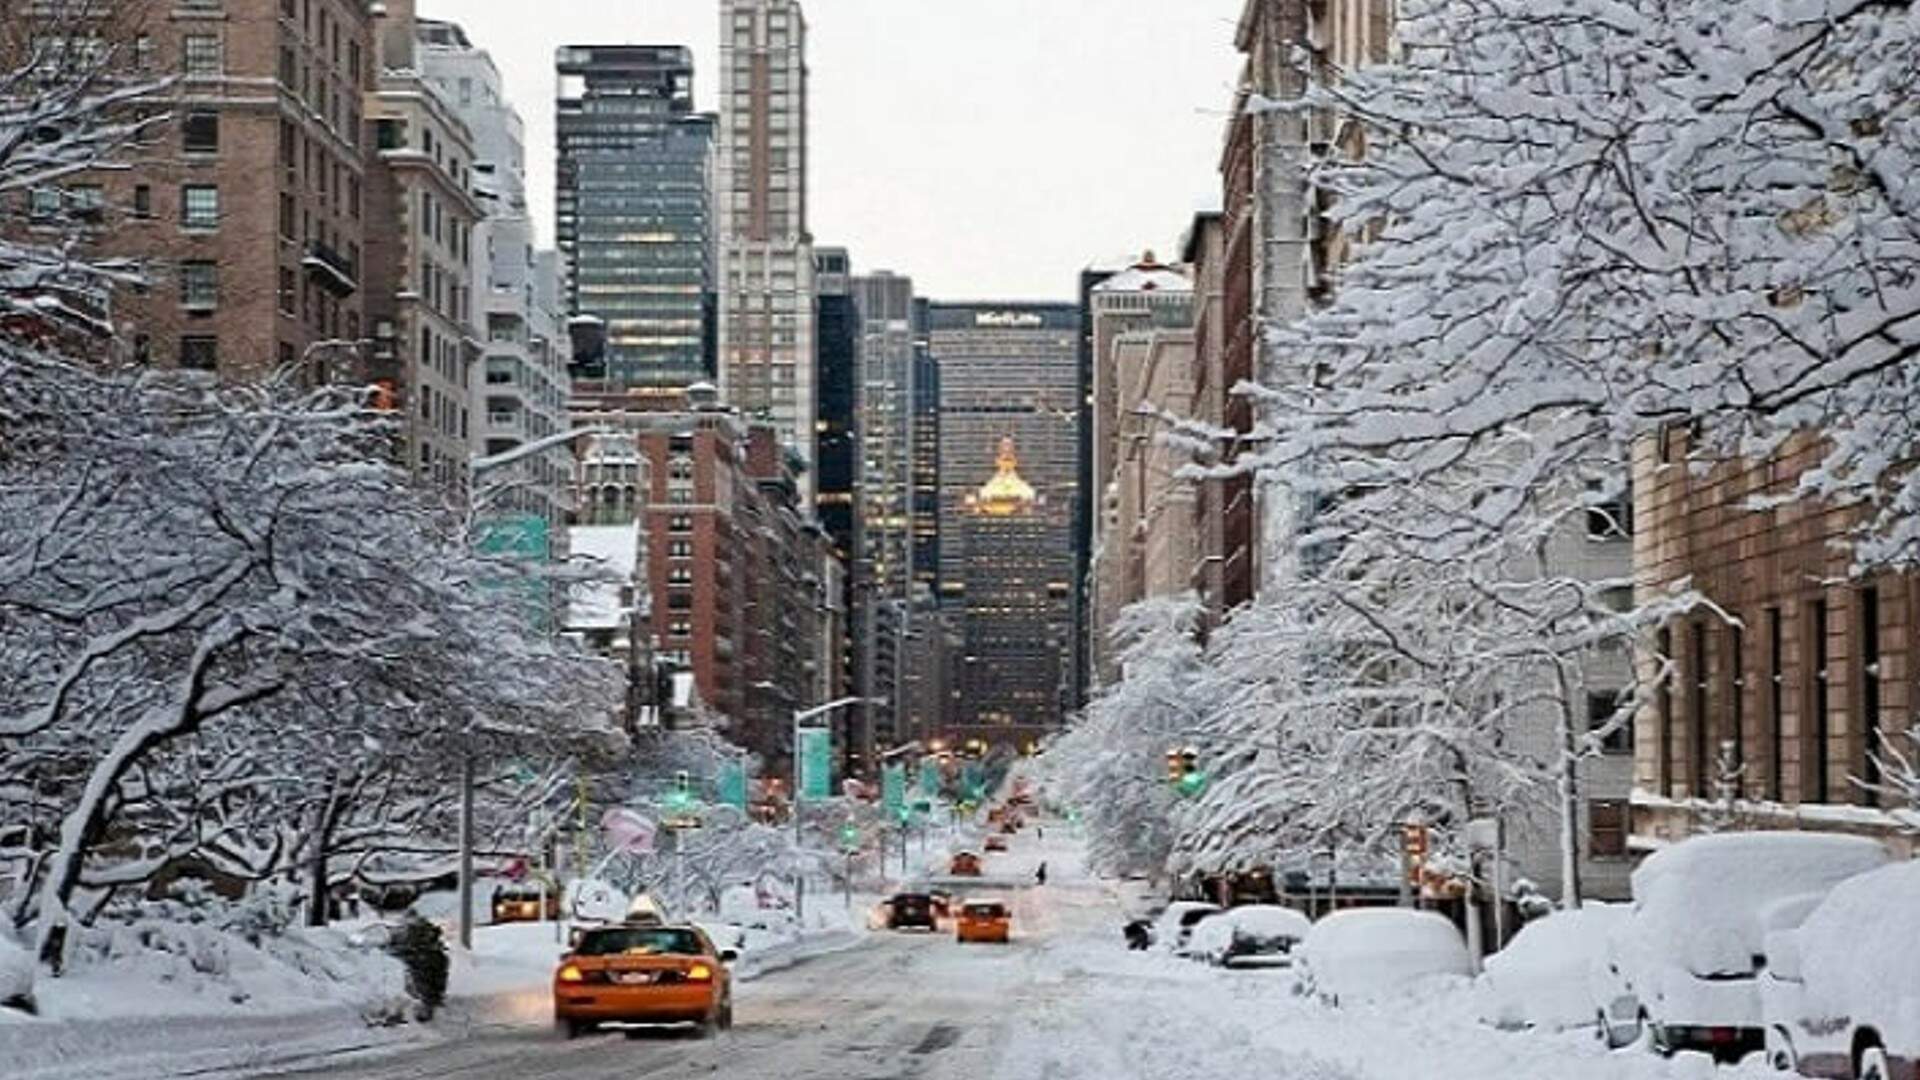 Onda de frio nos EUA provoca nevascas, cancela voos e já matou ao menos 34